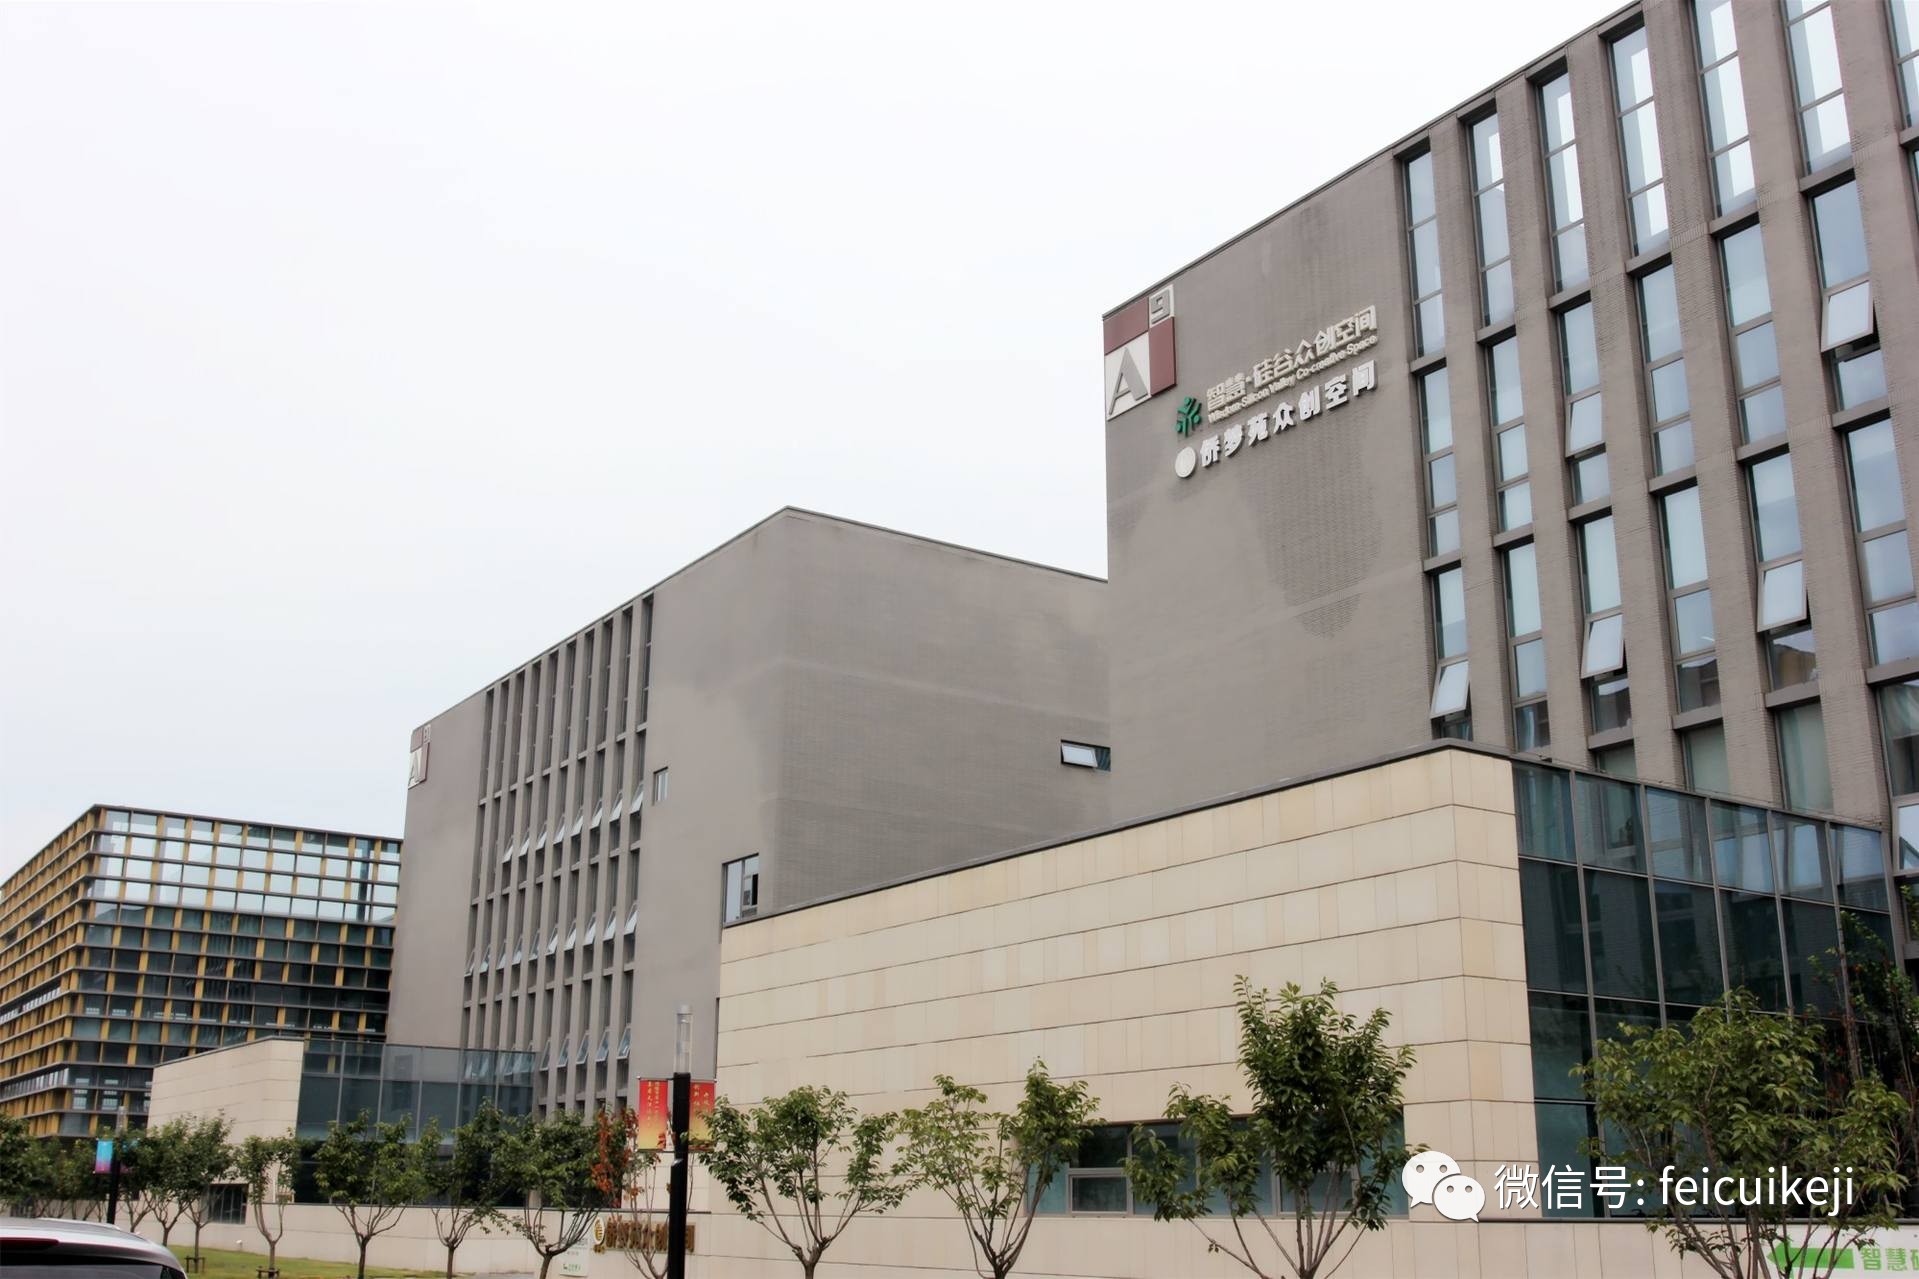 翡翠教育联手天津天狮学院打造特色IT课程